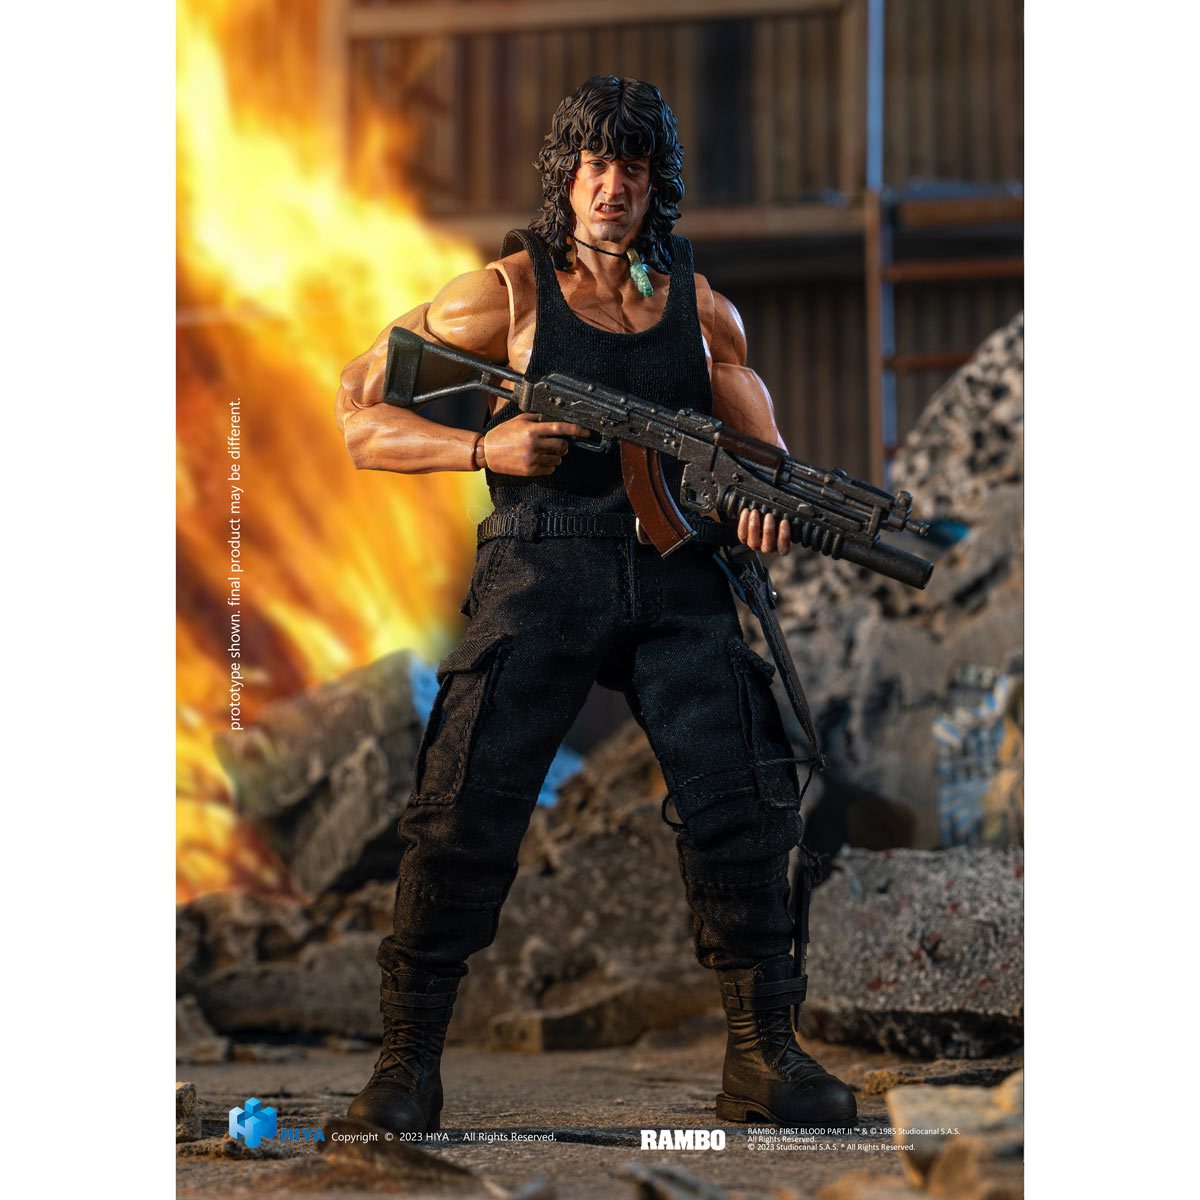 Rambo III: Rambo 1:12 Scale Action Figure - Fans